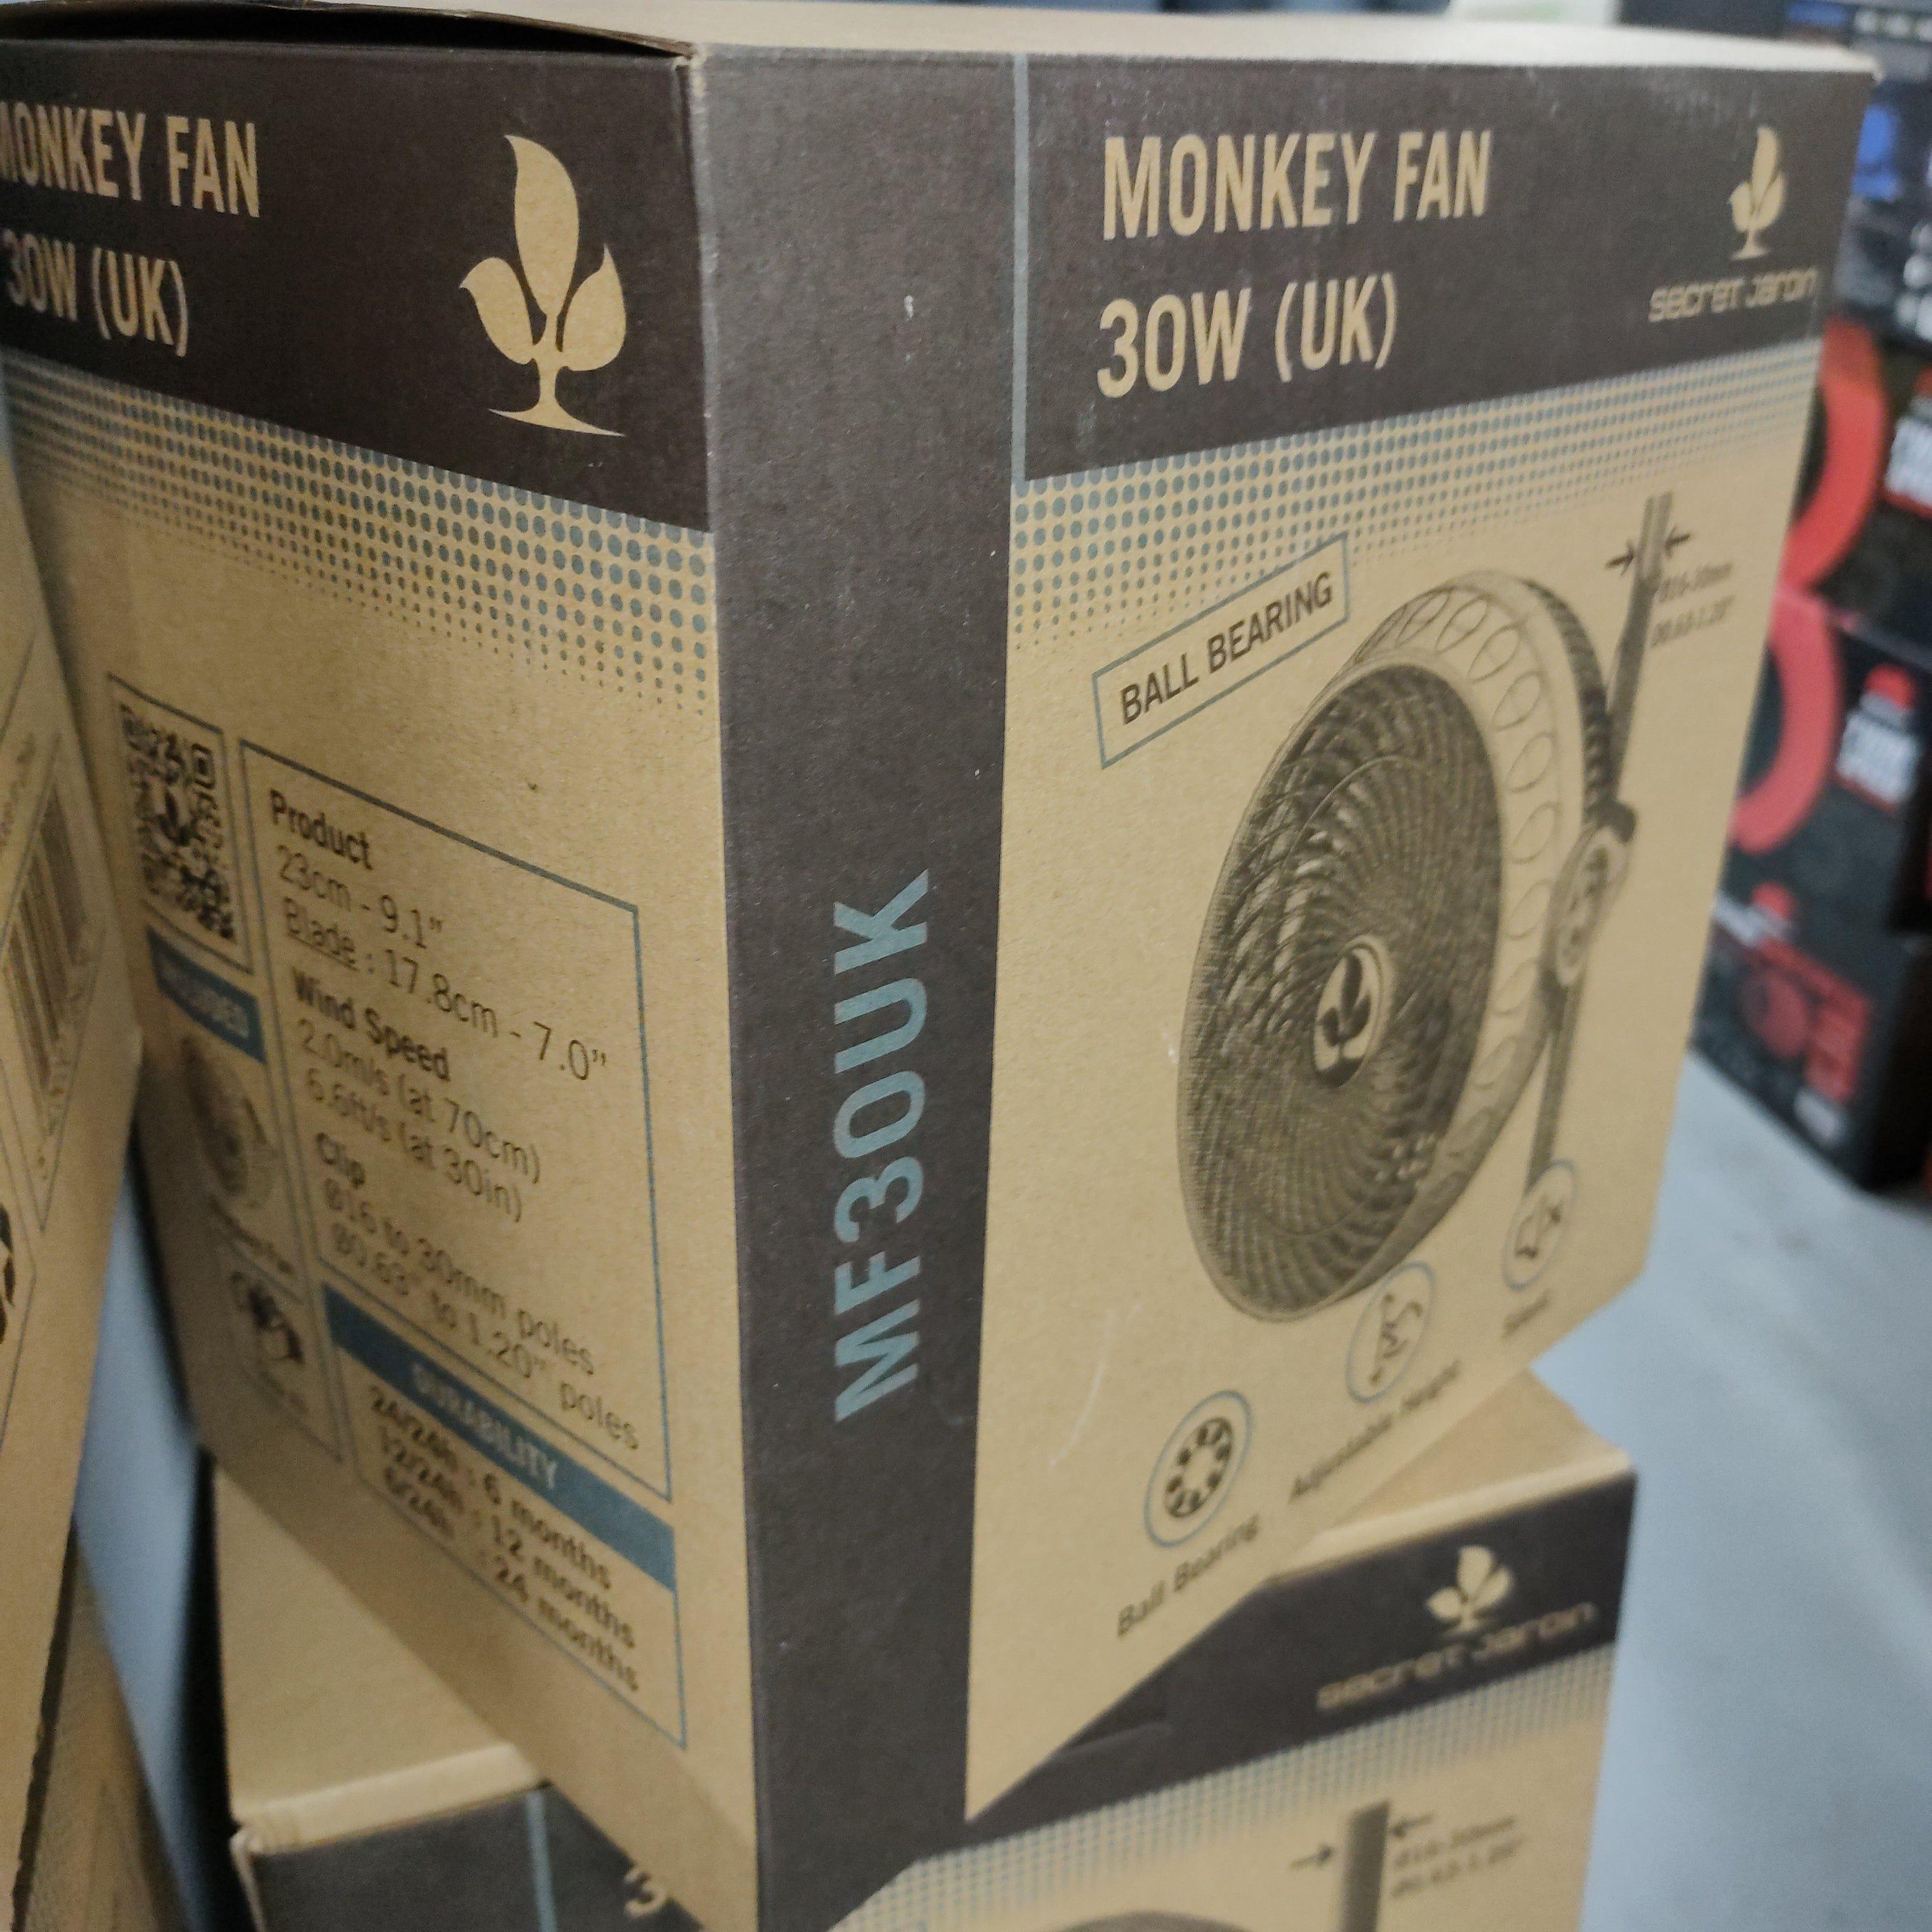 Air Movement Fan Secret Jardin Monkey Clip Fan 30W